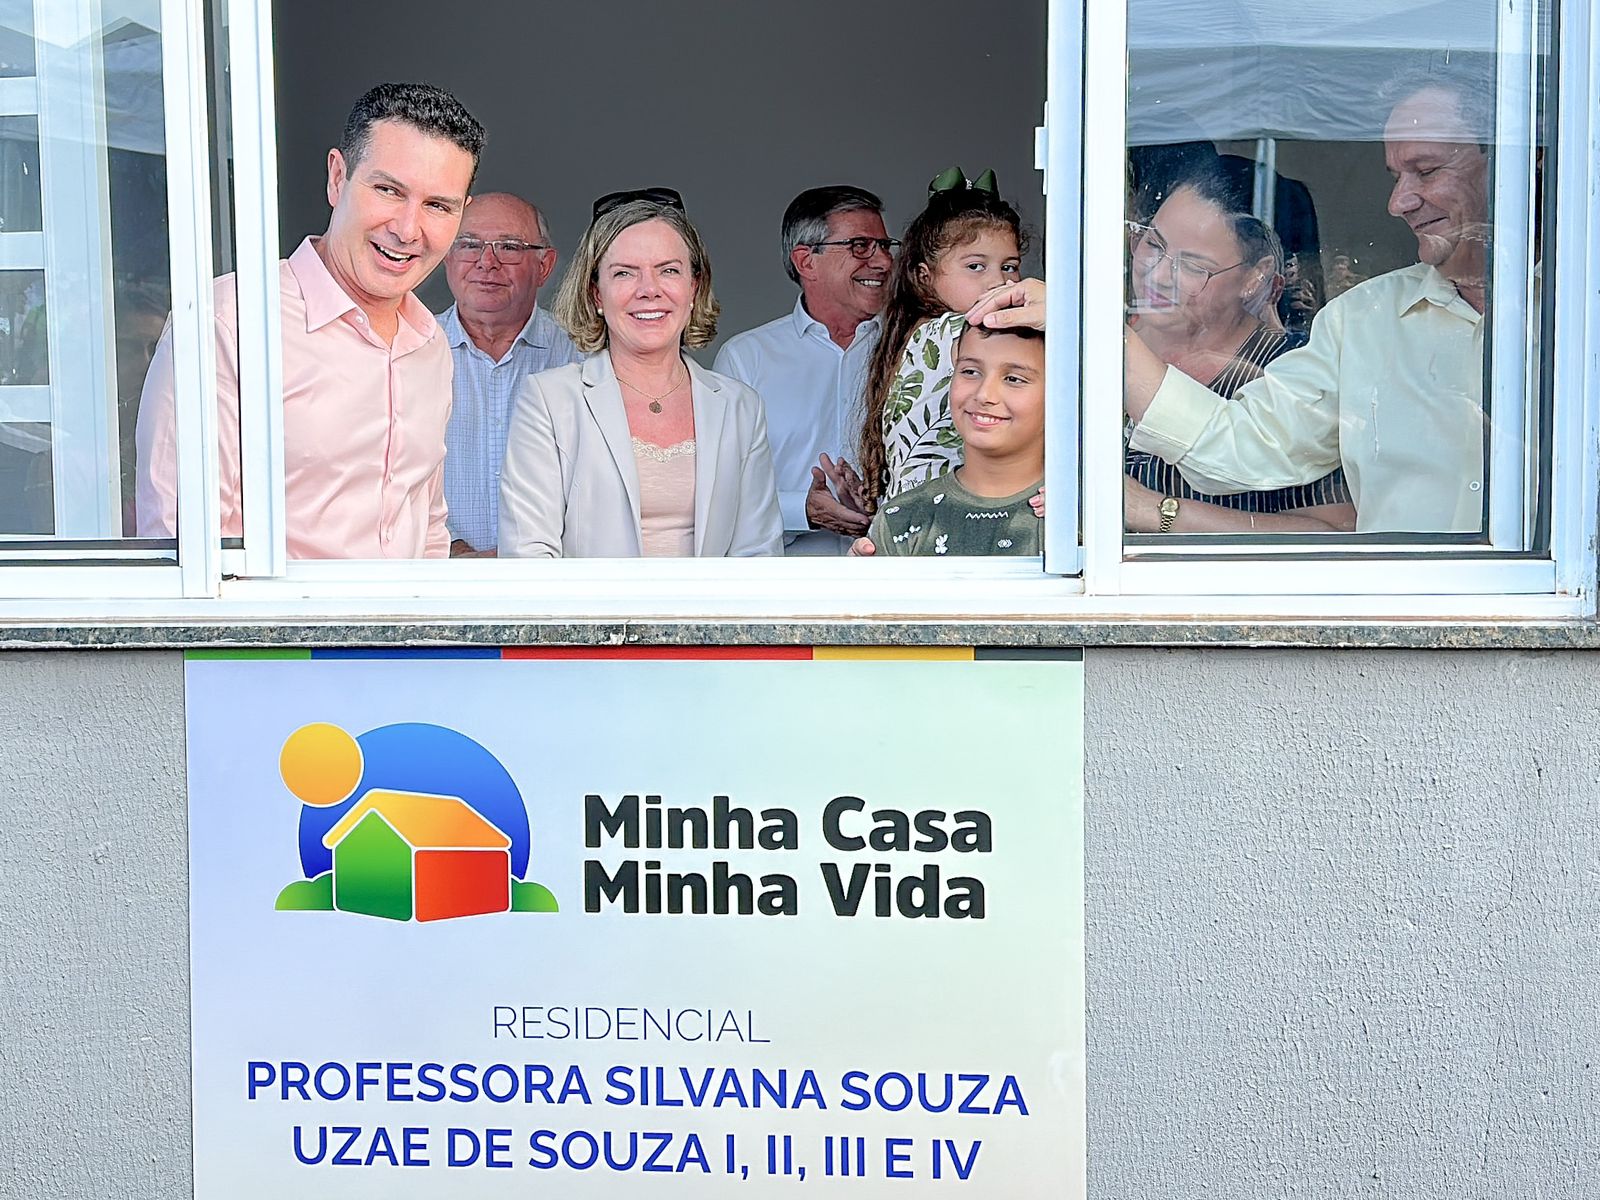  Ministro das Cidades e deputada Gleisi inauguram casas em Santa Mariana